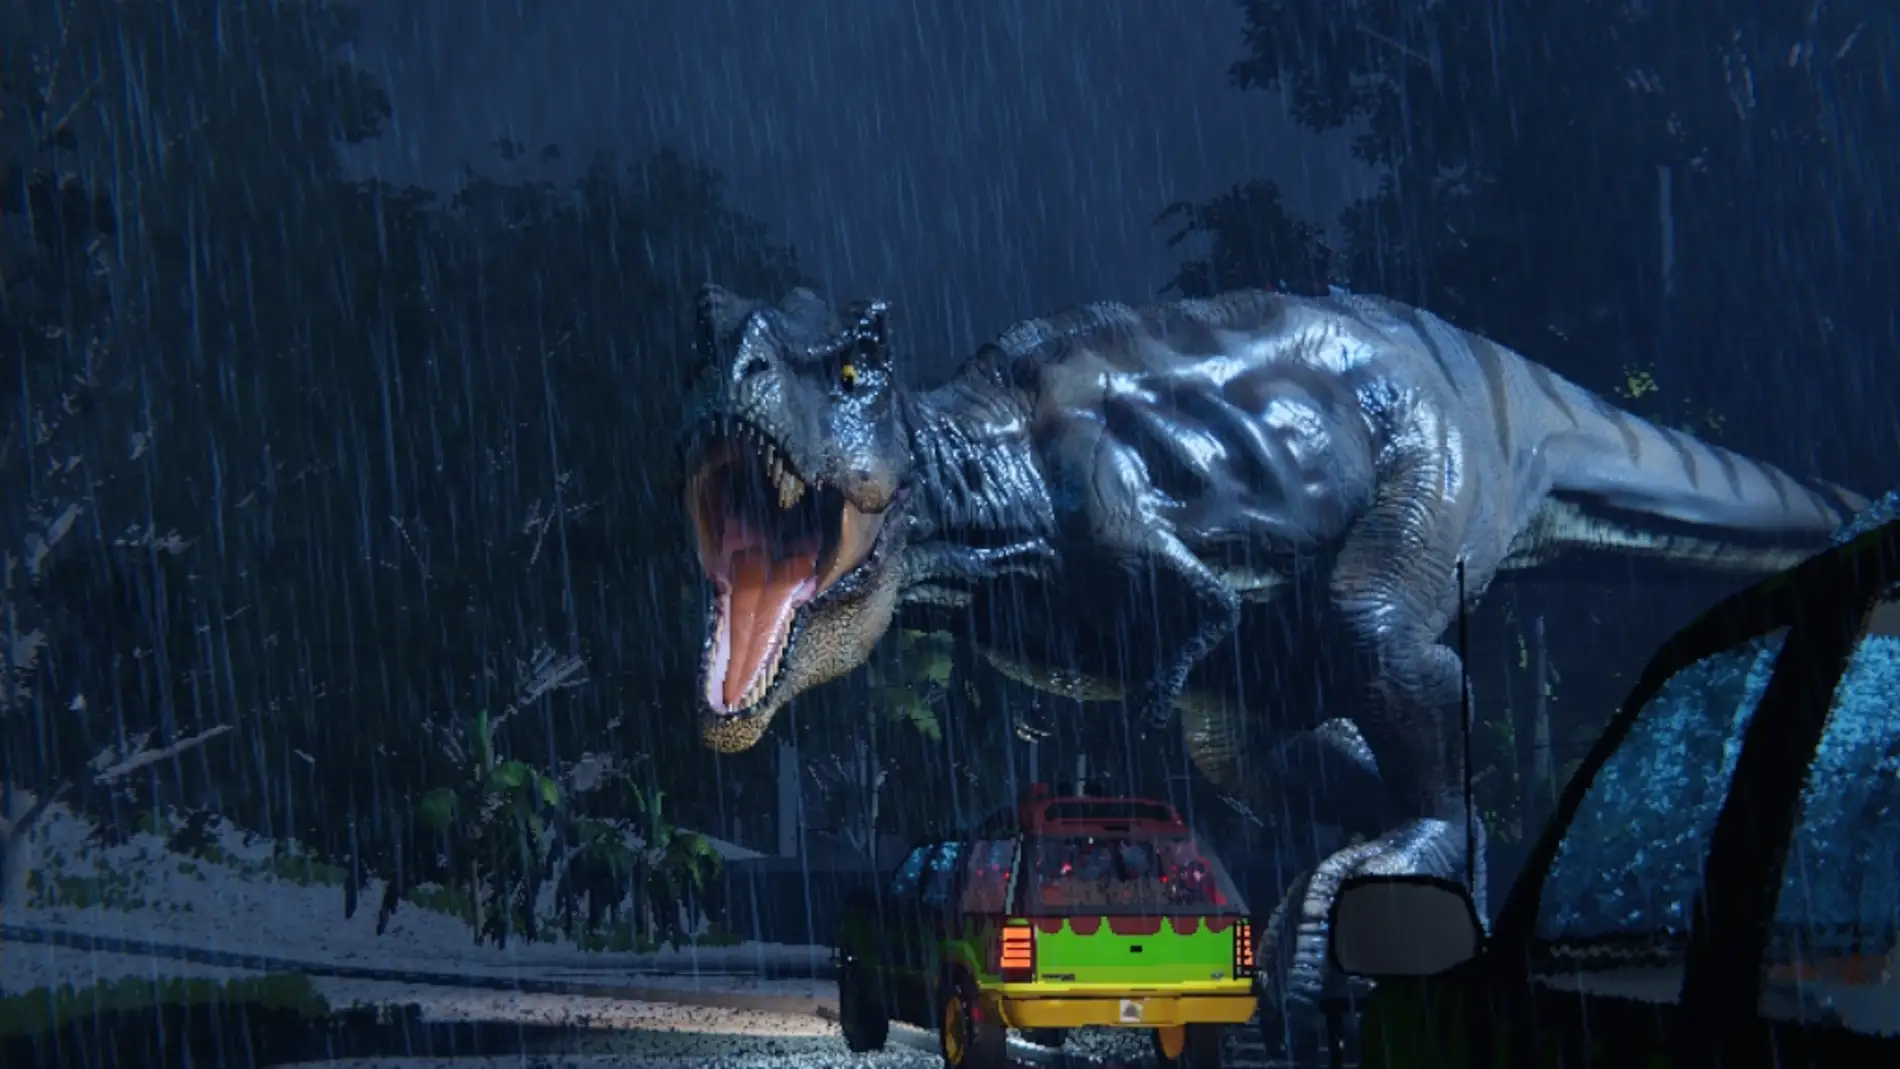 Estos son los errores de Jurassic Park que Spielberg no quiere que